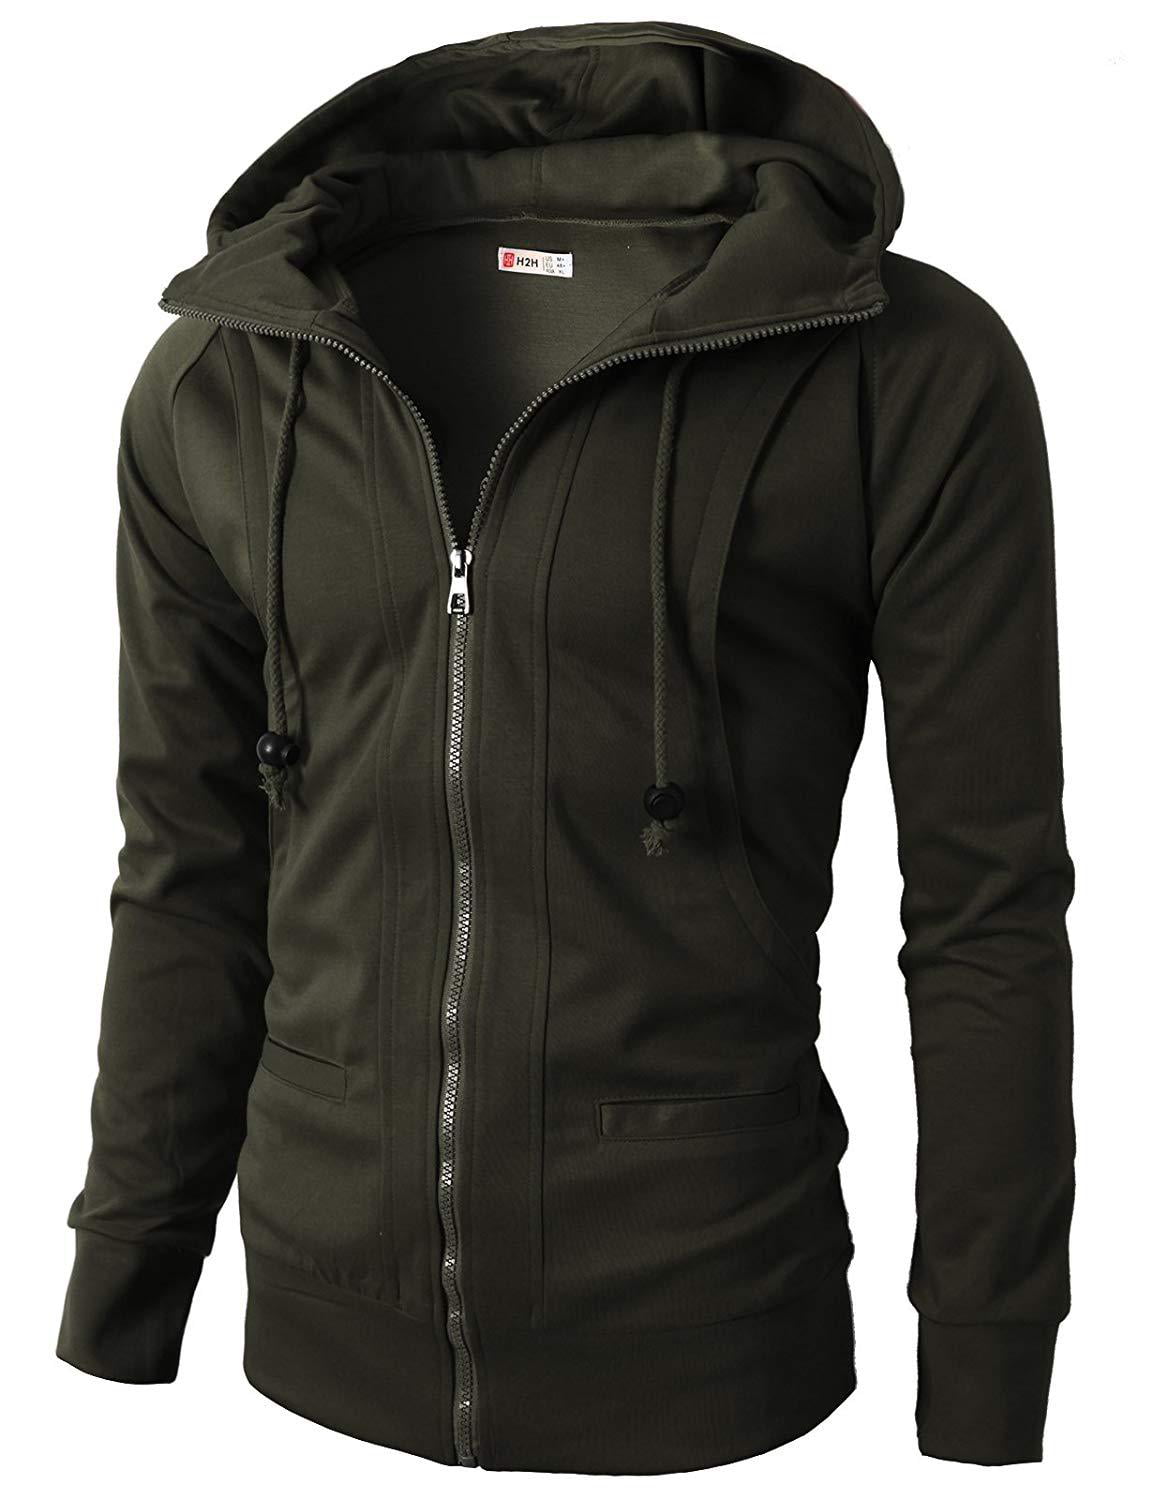 Men's Long Sleeve Solid Zipper Up Jacket Hooded Sweatshirt Causal Sport Coat Top